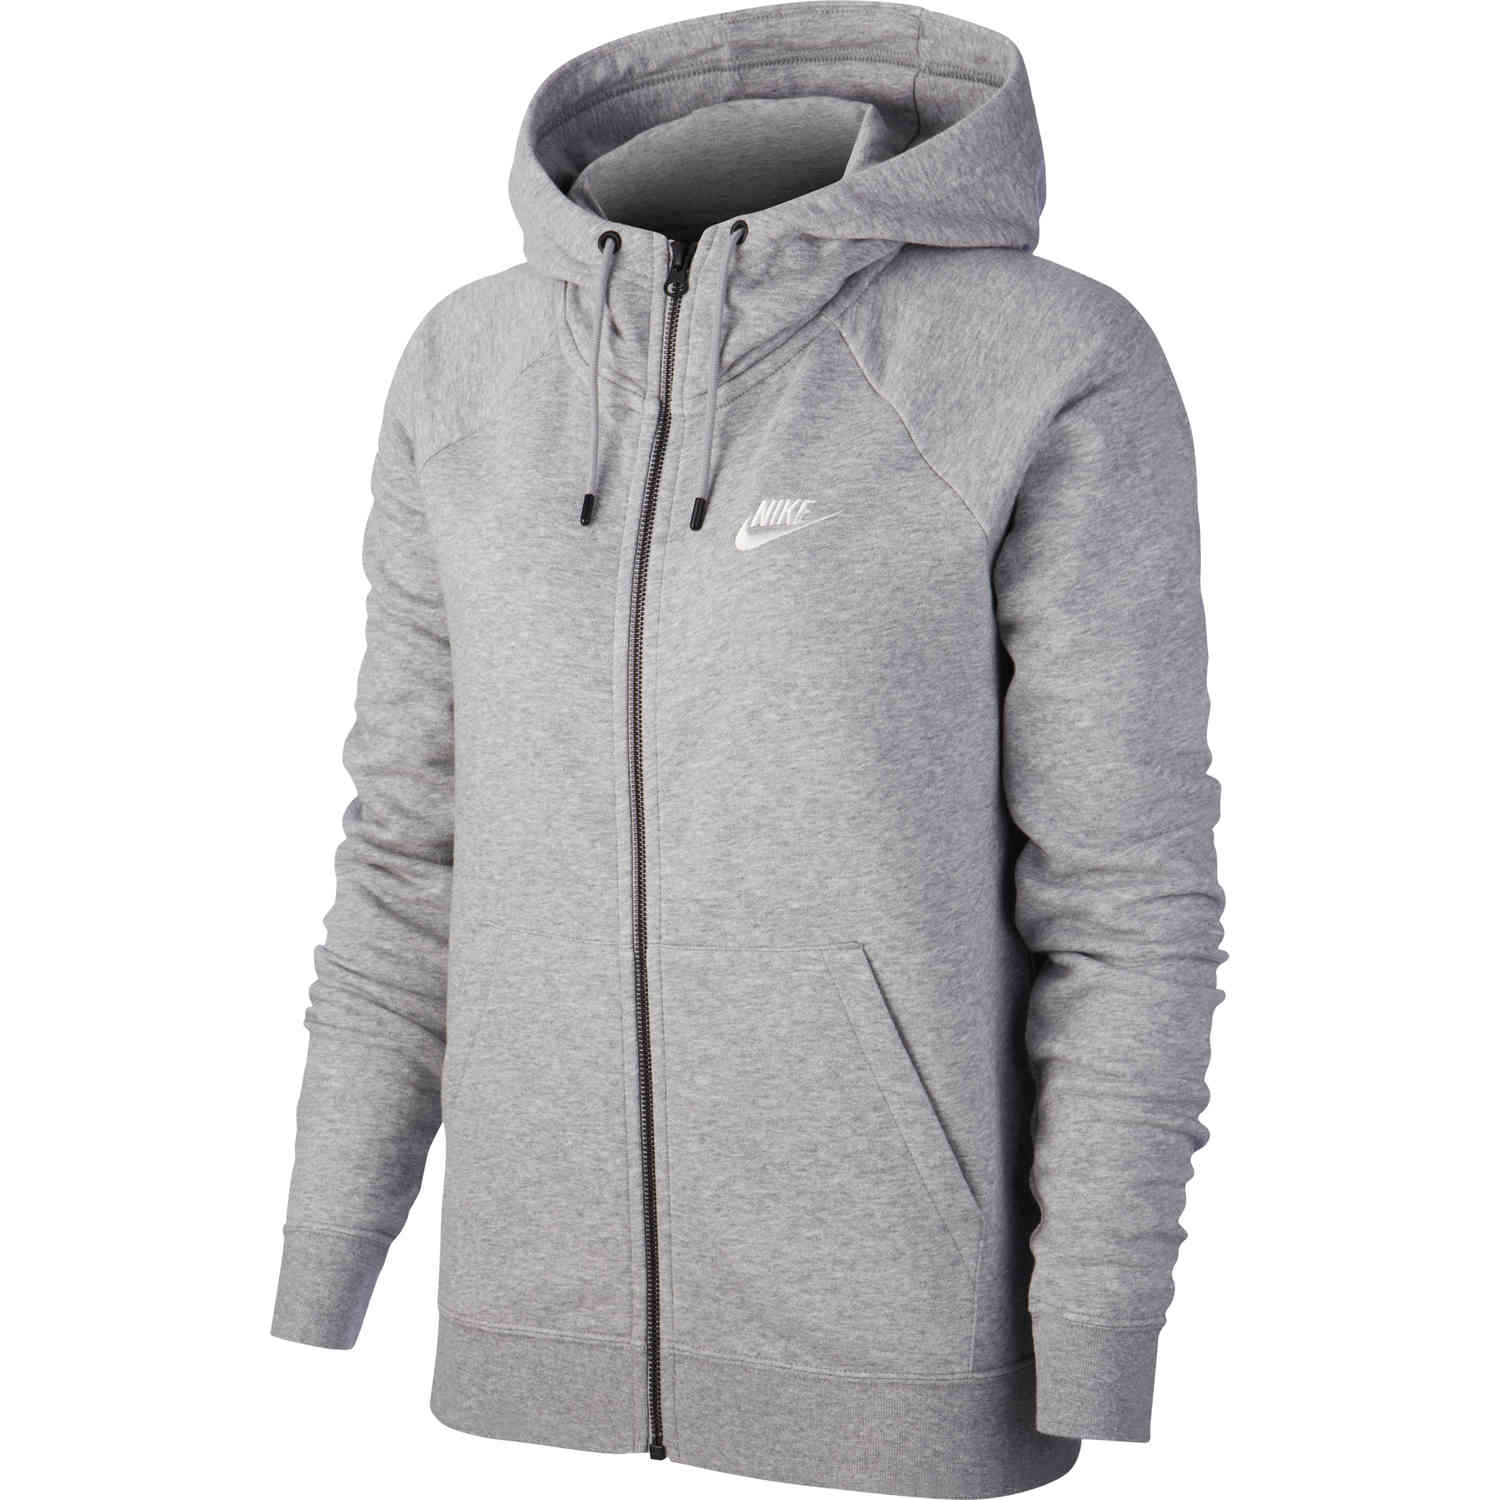 Women's Nike Essential Fleece Full-zip 